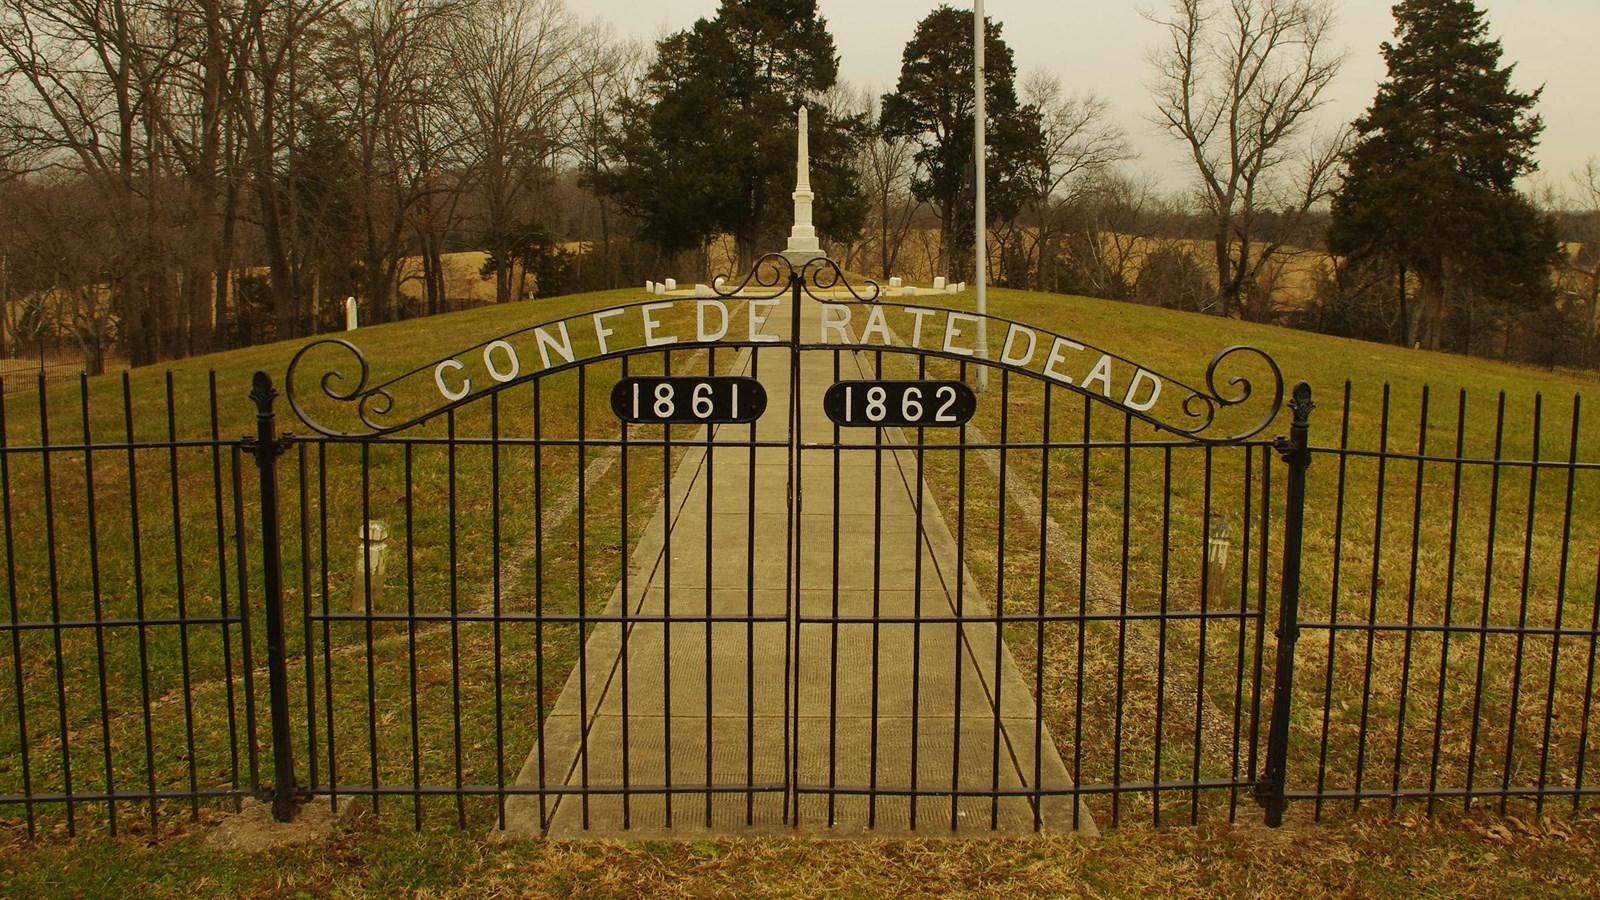 Groveton Confederate Cemetery